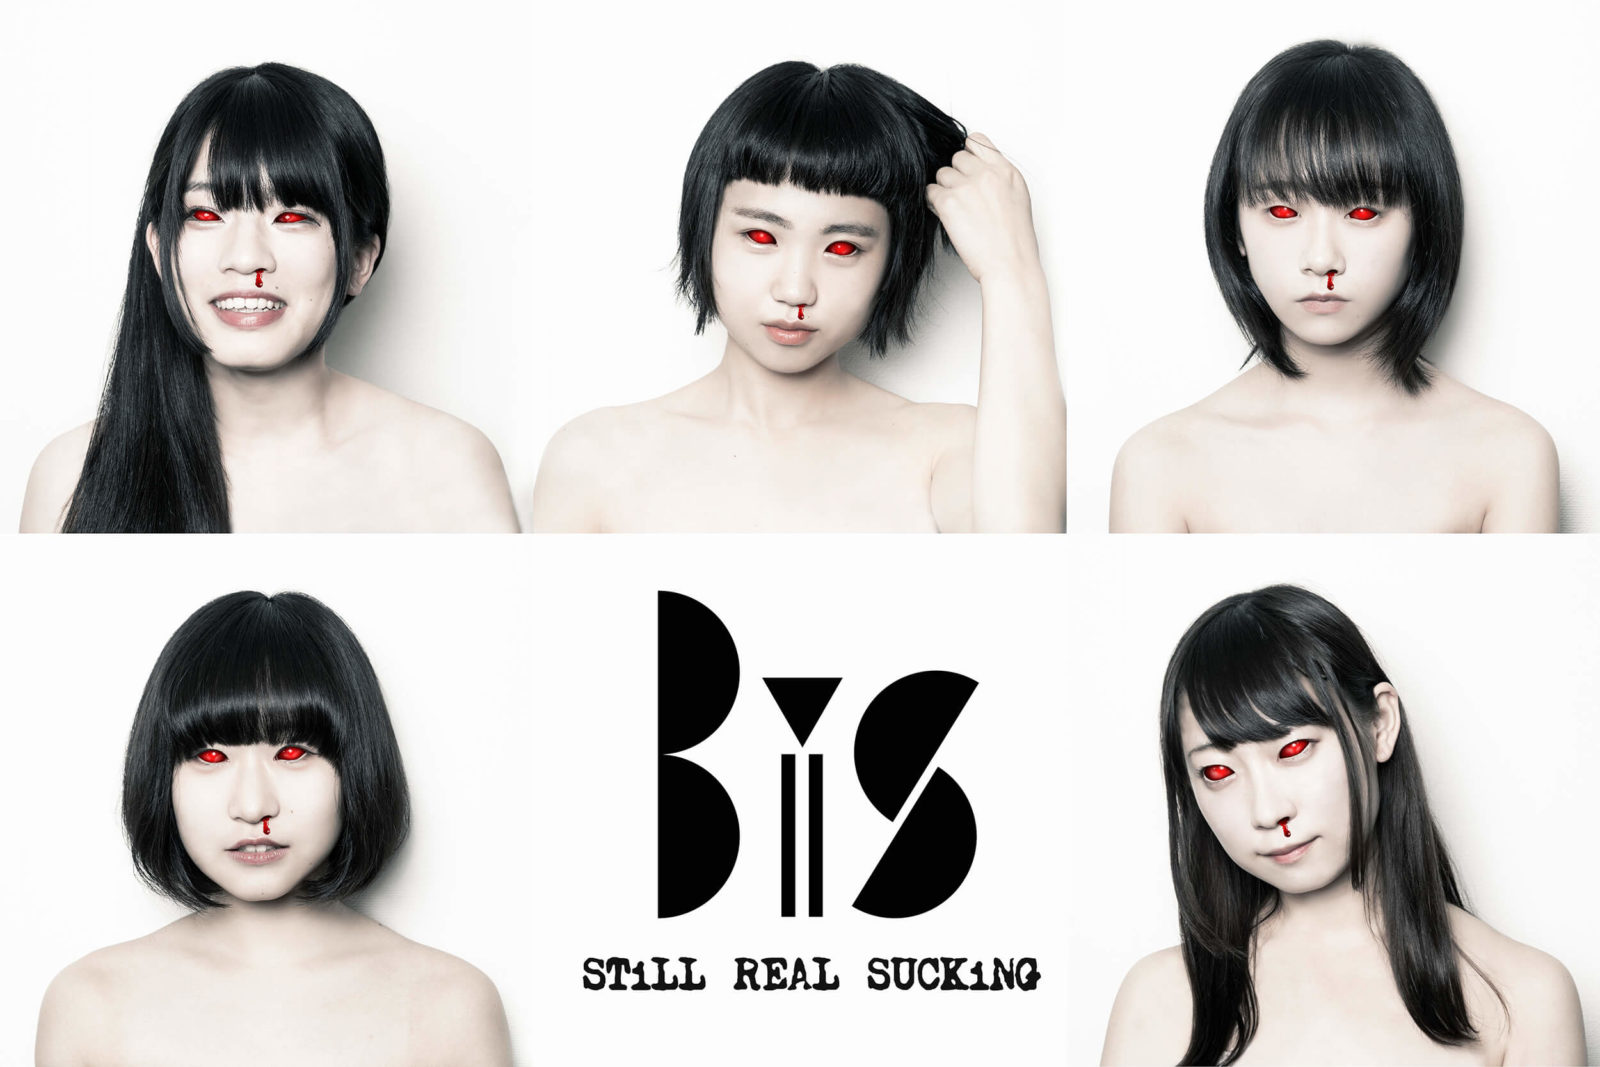 BiS、新アルバムから新曲2曲を一挙に公開サムネイル画像!